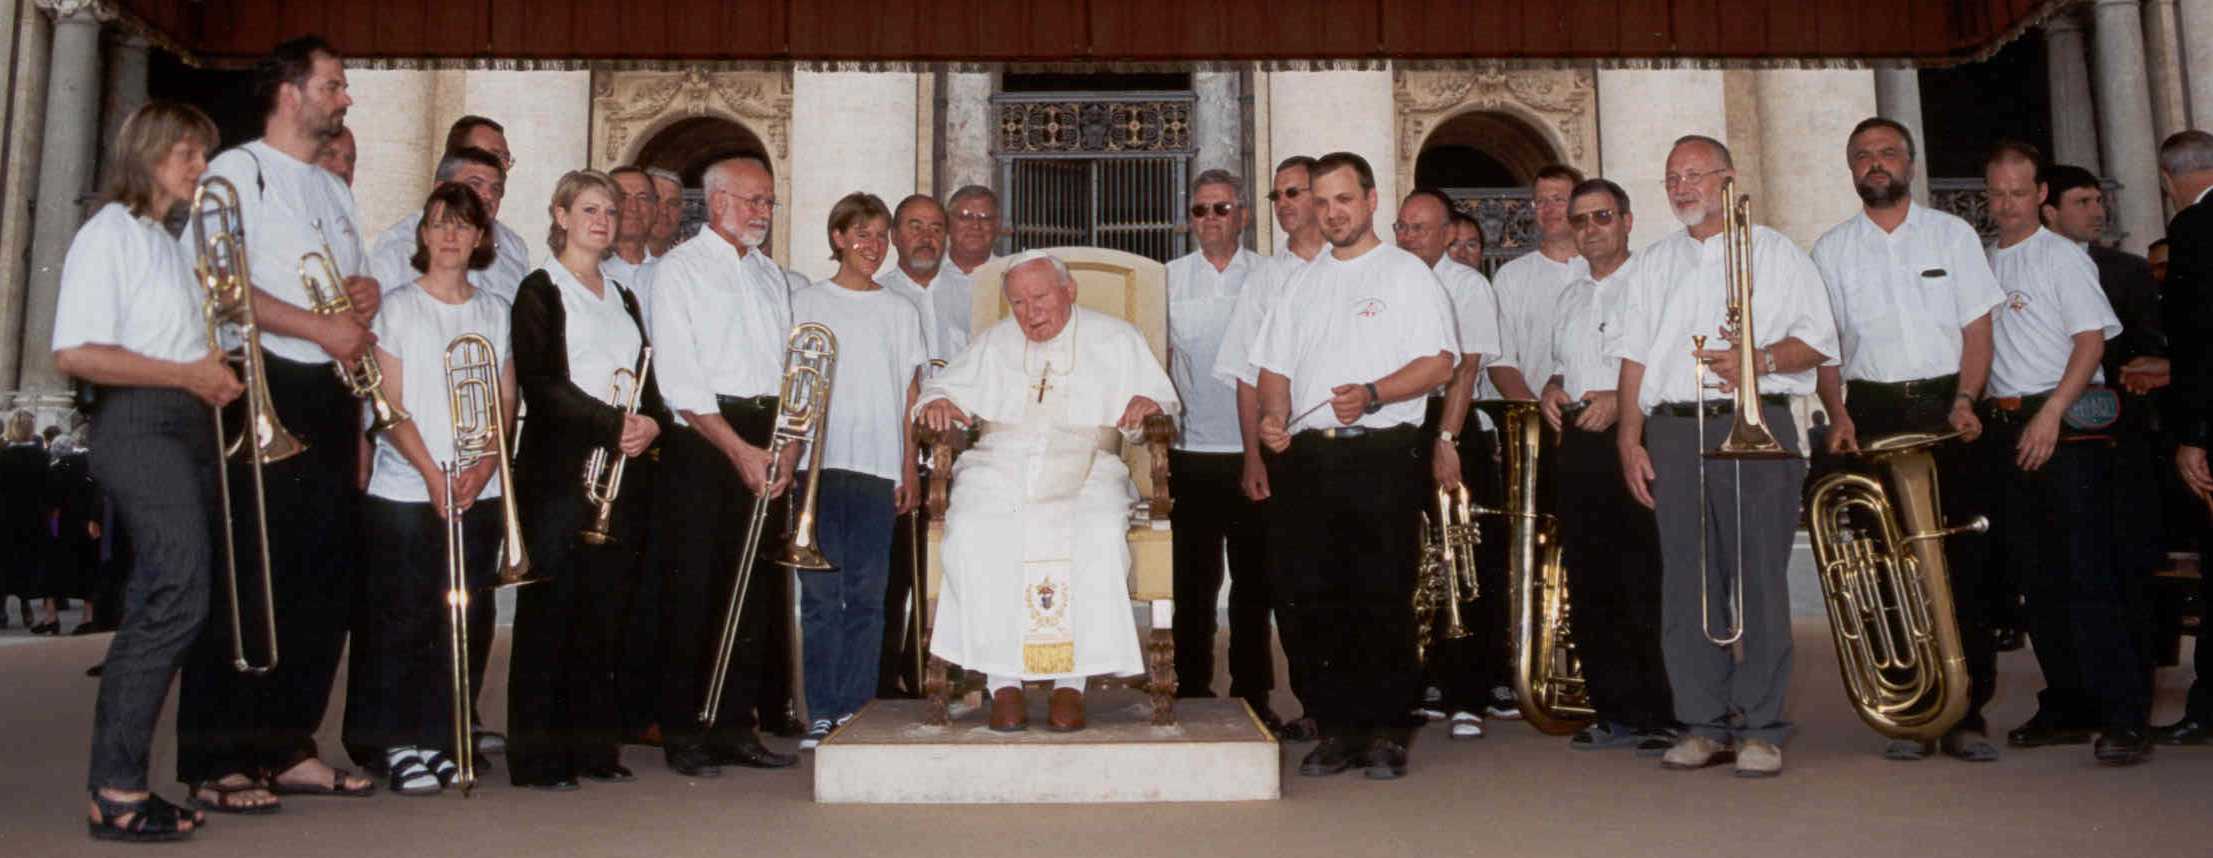 Papstaudienz 23.05.2001